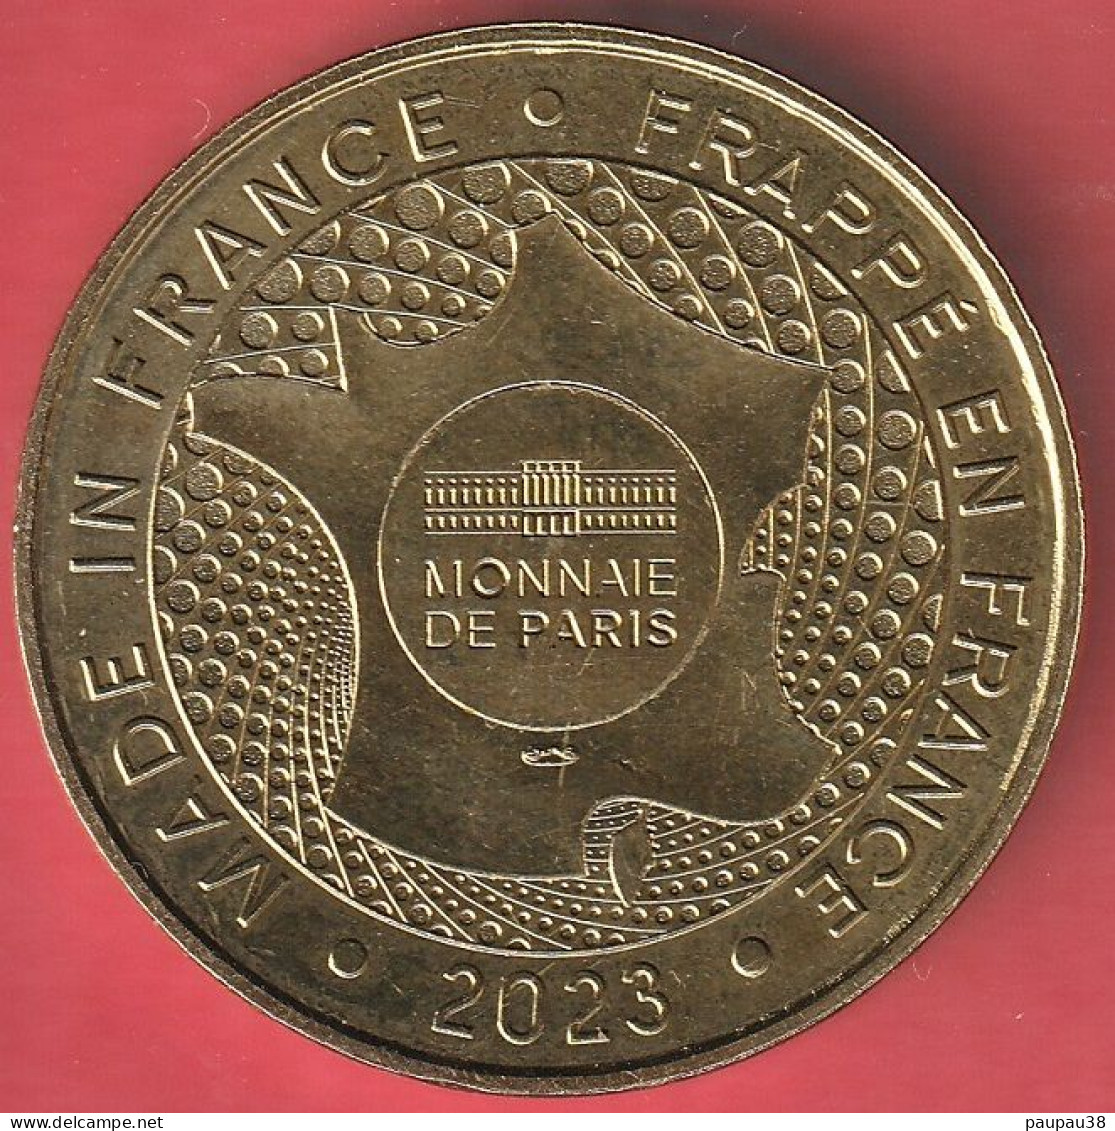 MONNAIE DE PARIS 2023 Futuroscope - Chasseurs De Tornades - 2003